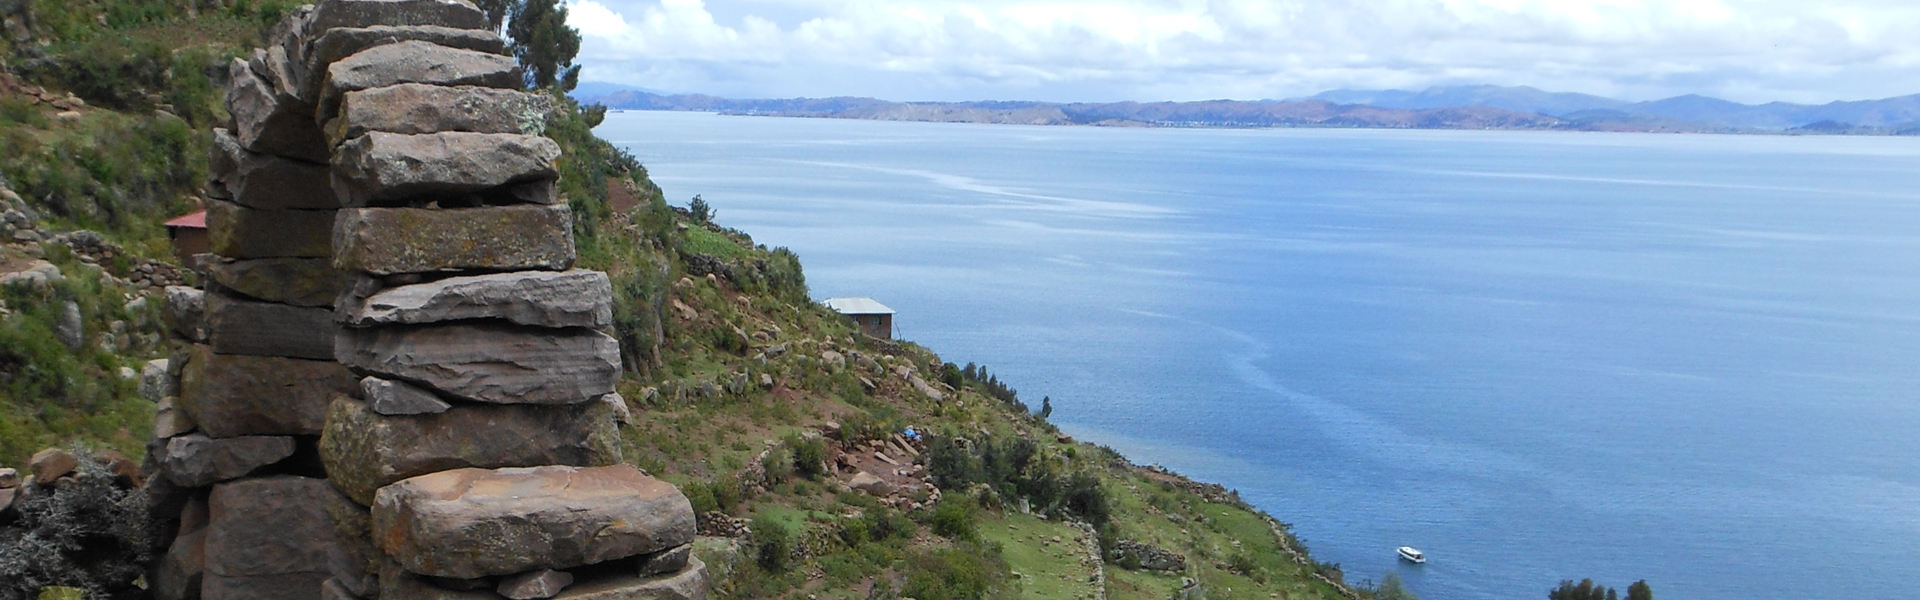 Vale a pena conhecer mais o lado peruano do Lago Titicaca – Uros, Amantani e Taquile